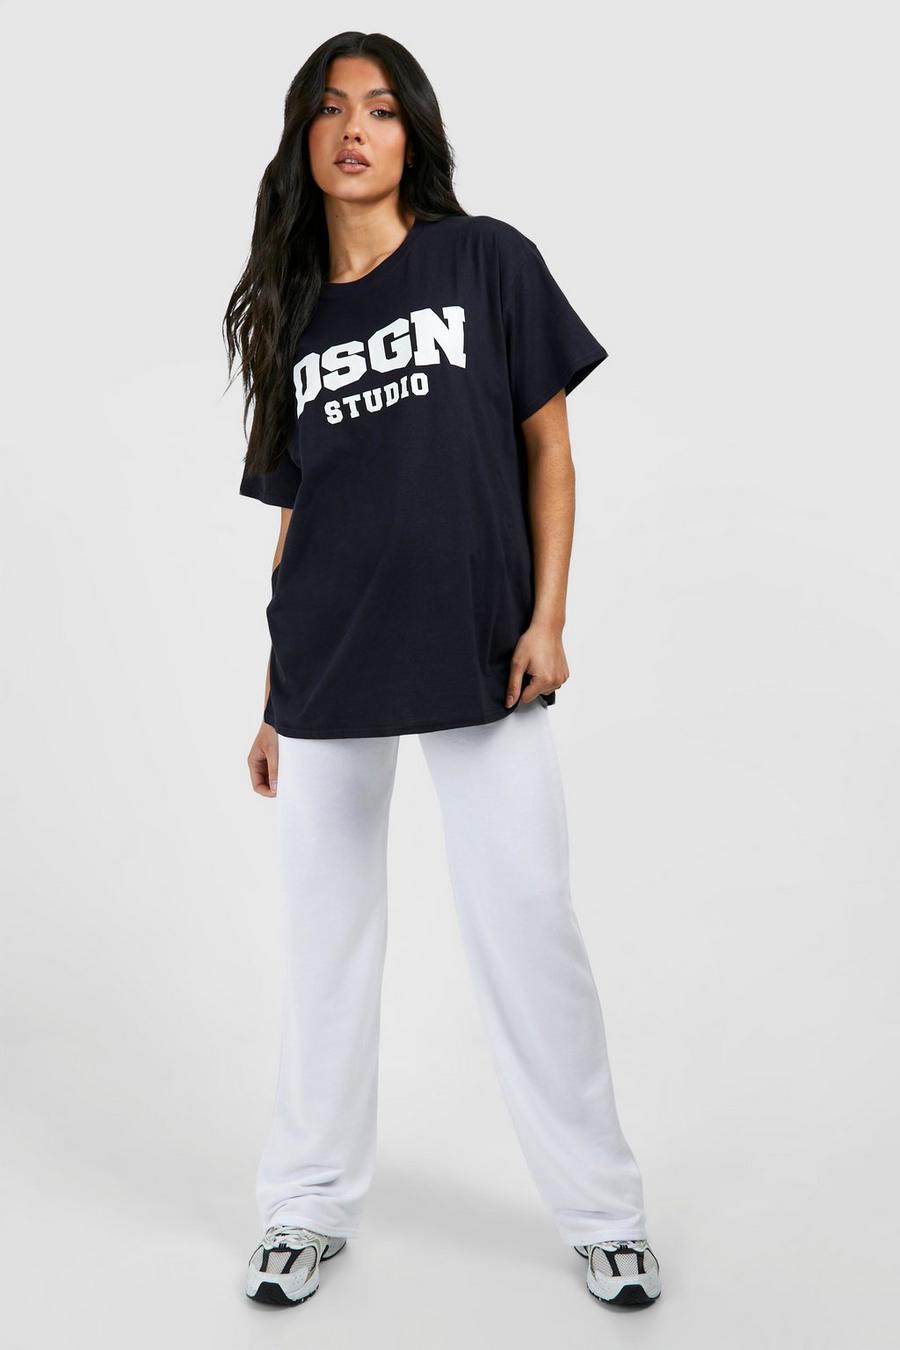 Tuta sportiva Premaman con T-shirt Dsgn Studio, Navy